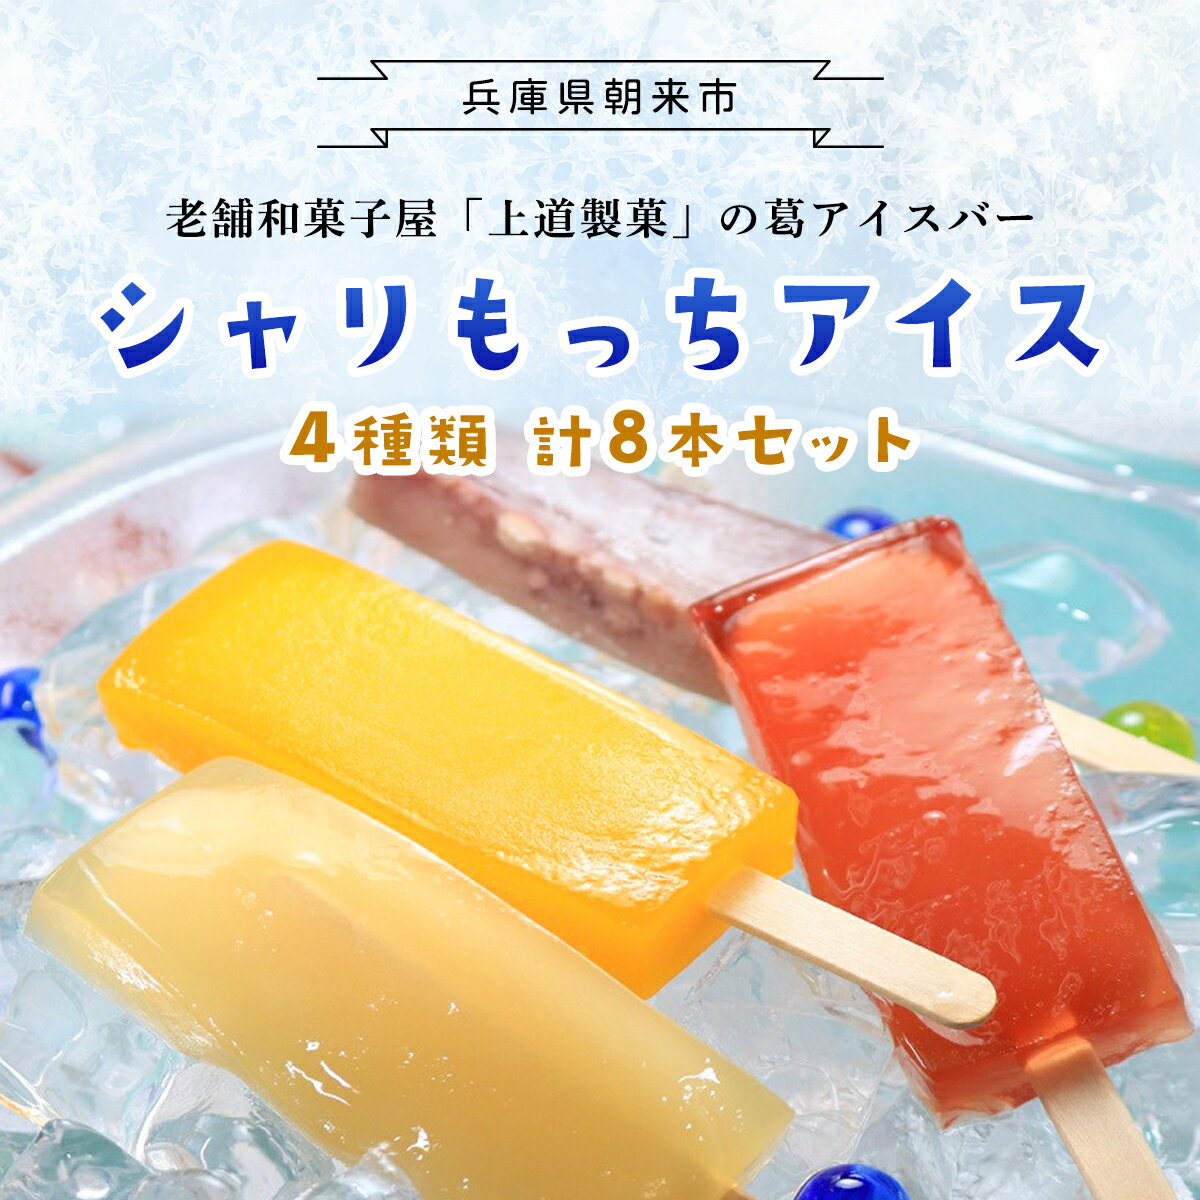 【ふるさと納税】 上道製菓 シャリもっちアイス (4種類) 